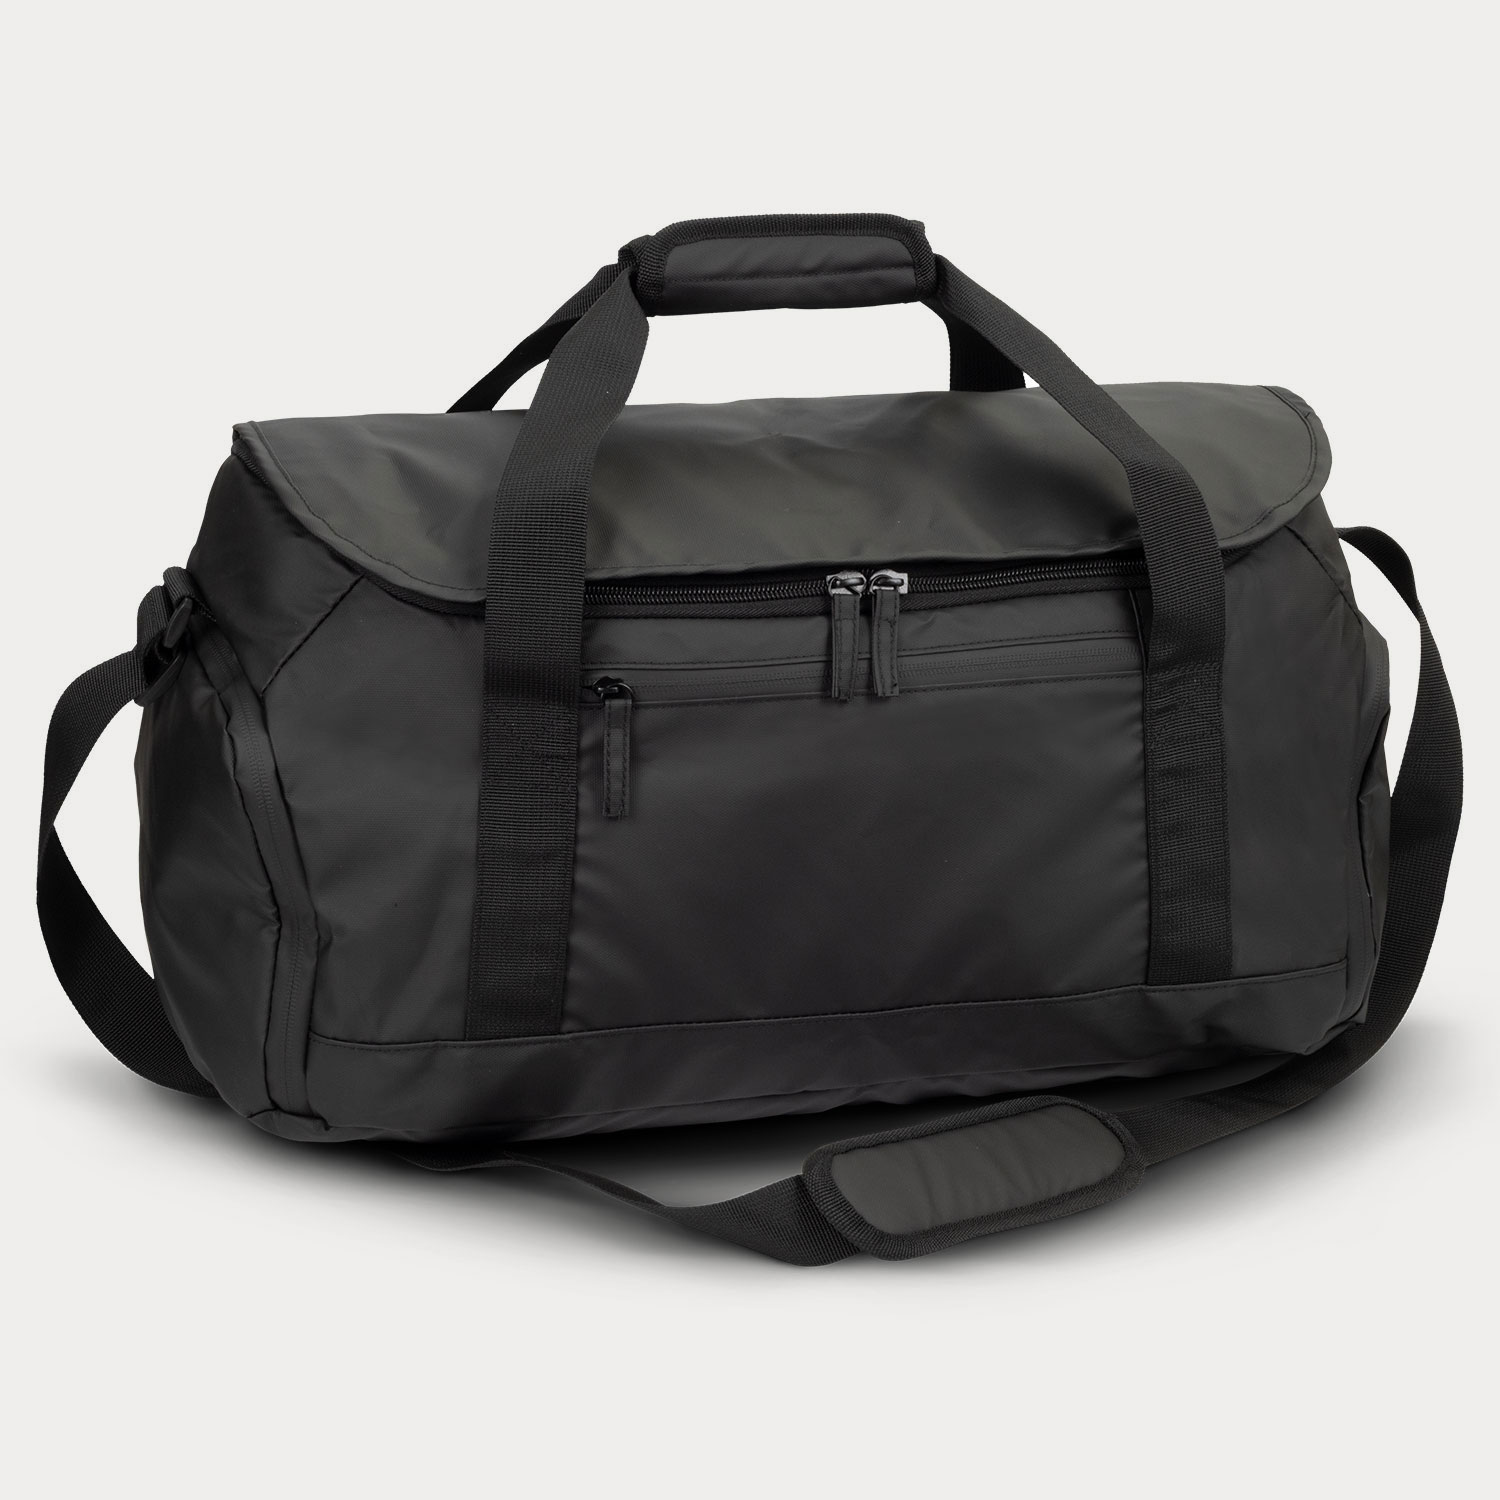 Aquinas 20L Duffle Bag | PrimoProducts